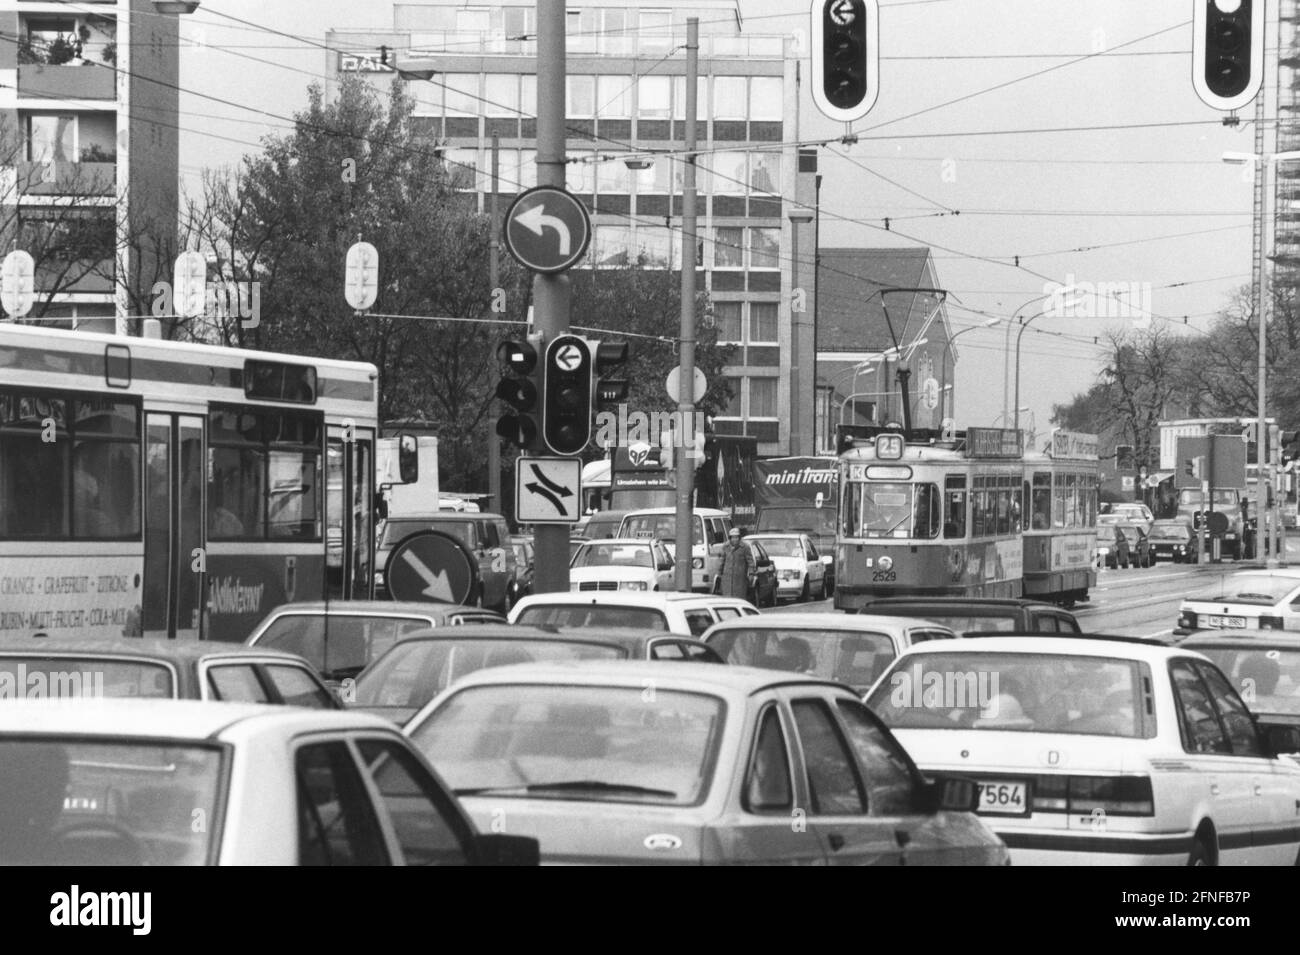 En la intersección de Candidstraße, Tegernseer Landstraße y Grünwalderstraße, el tranvía pasa entre el tráfico pesado causado por los coches. [traducción automática] Foto de stock